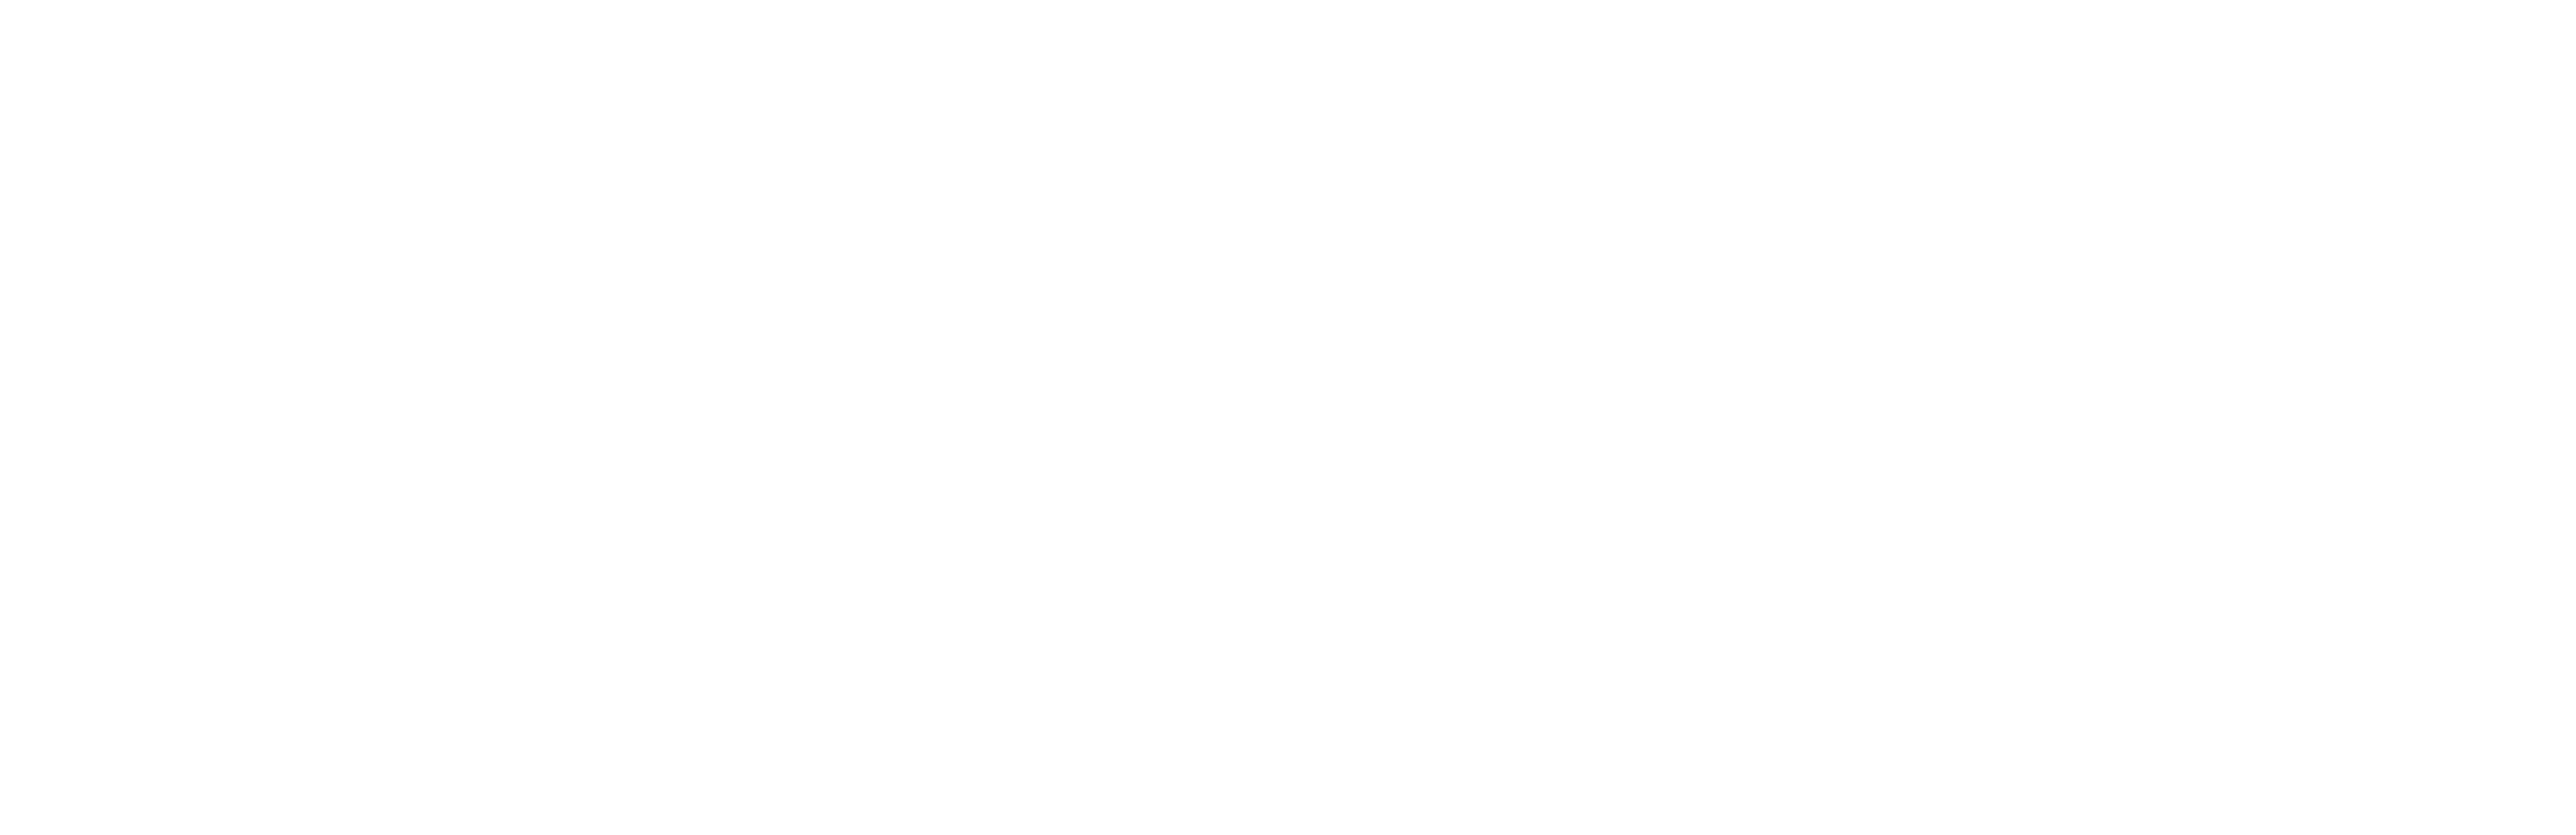 Waltz with Bashir logo